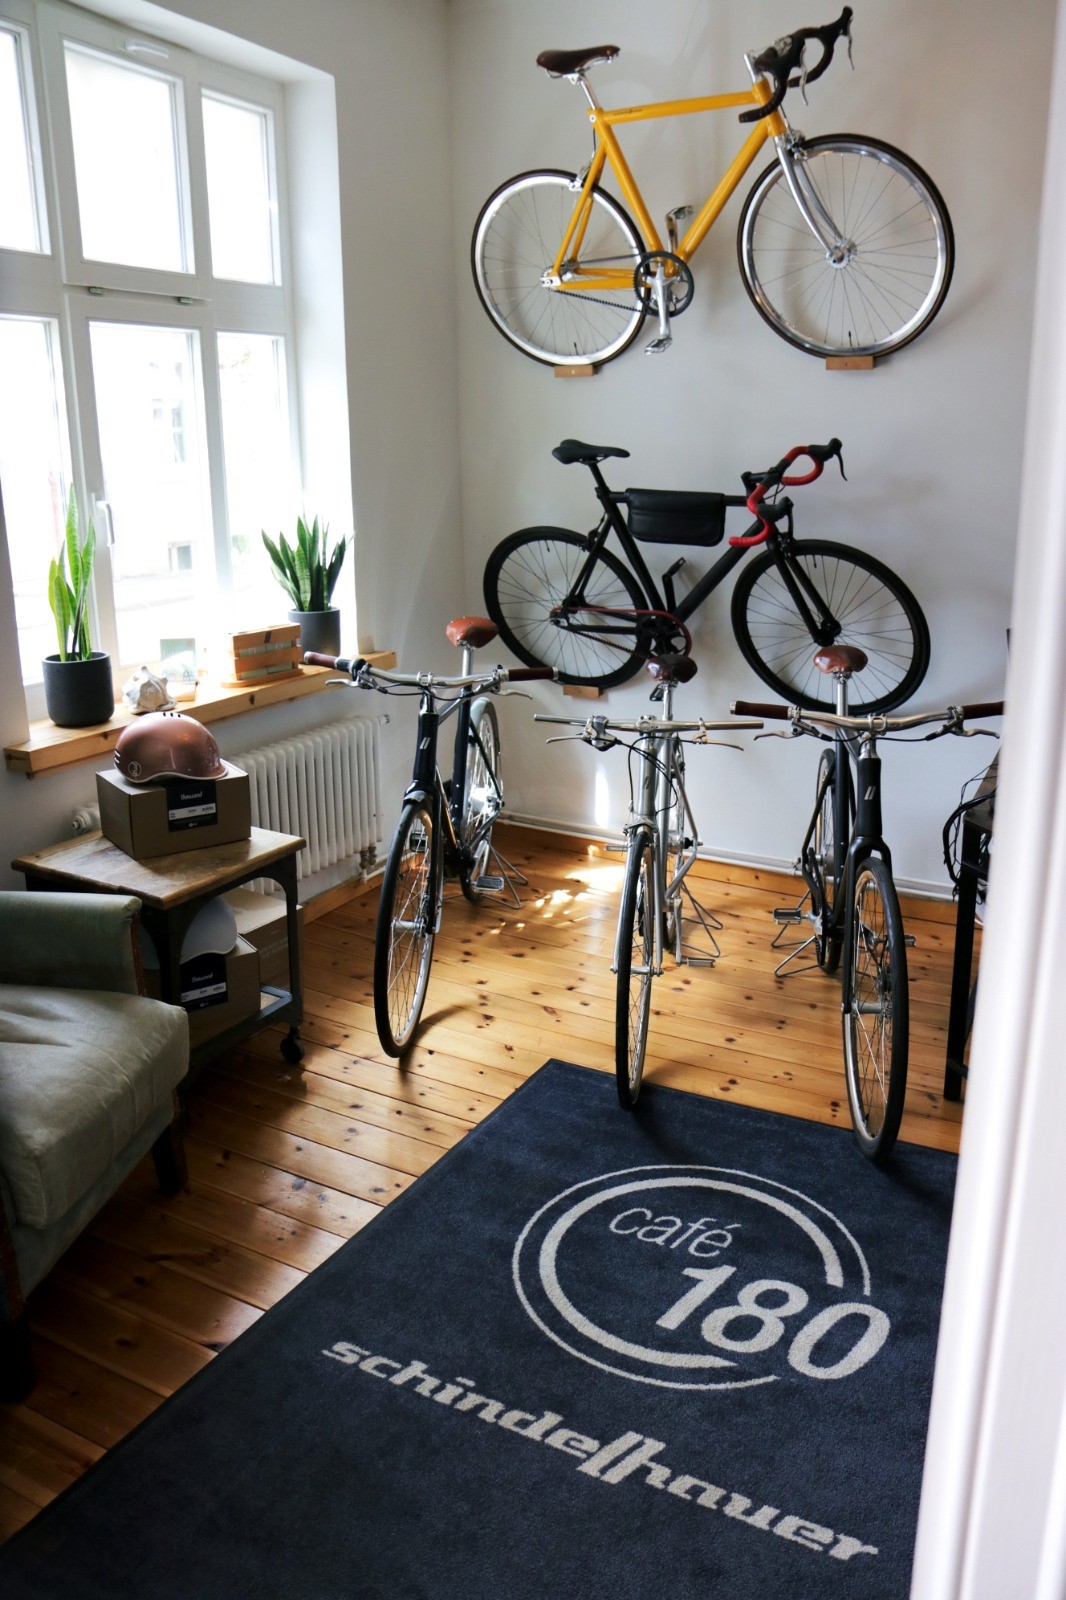 Bilder Café 180 - Schindelhauer Bikes Premium Händler- Fahrradgeschäft in Wismar